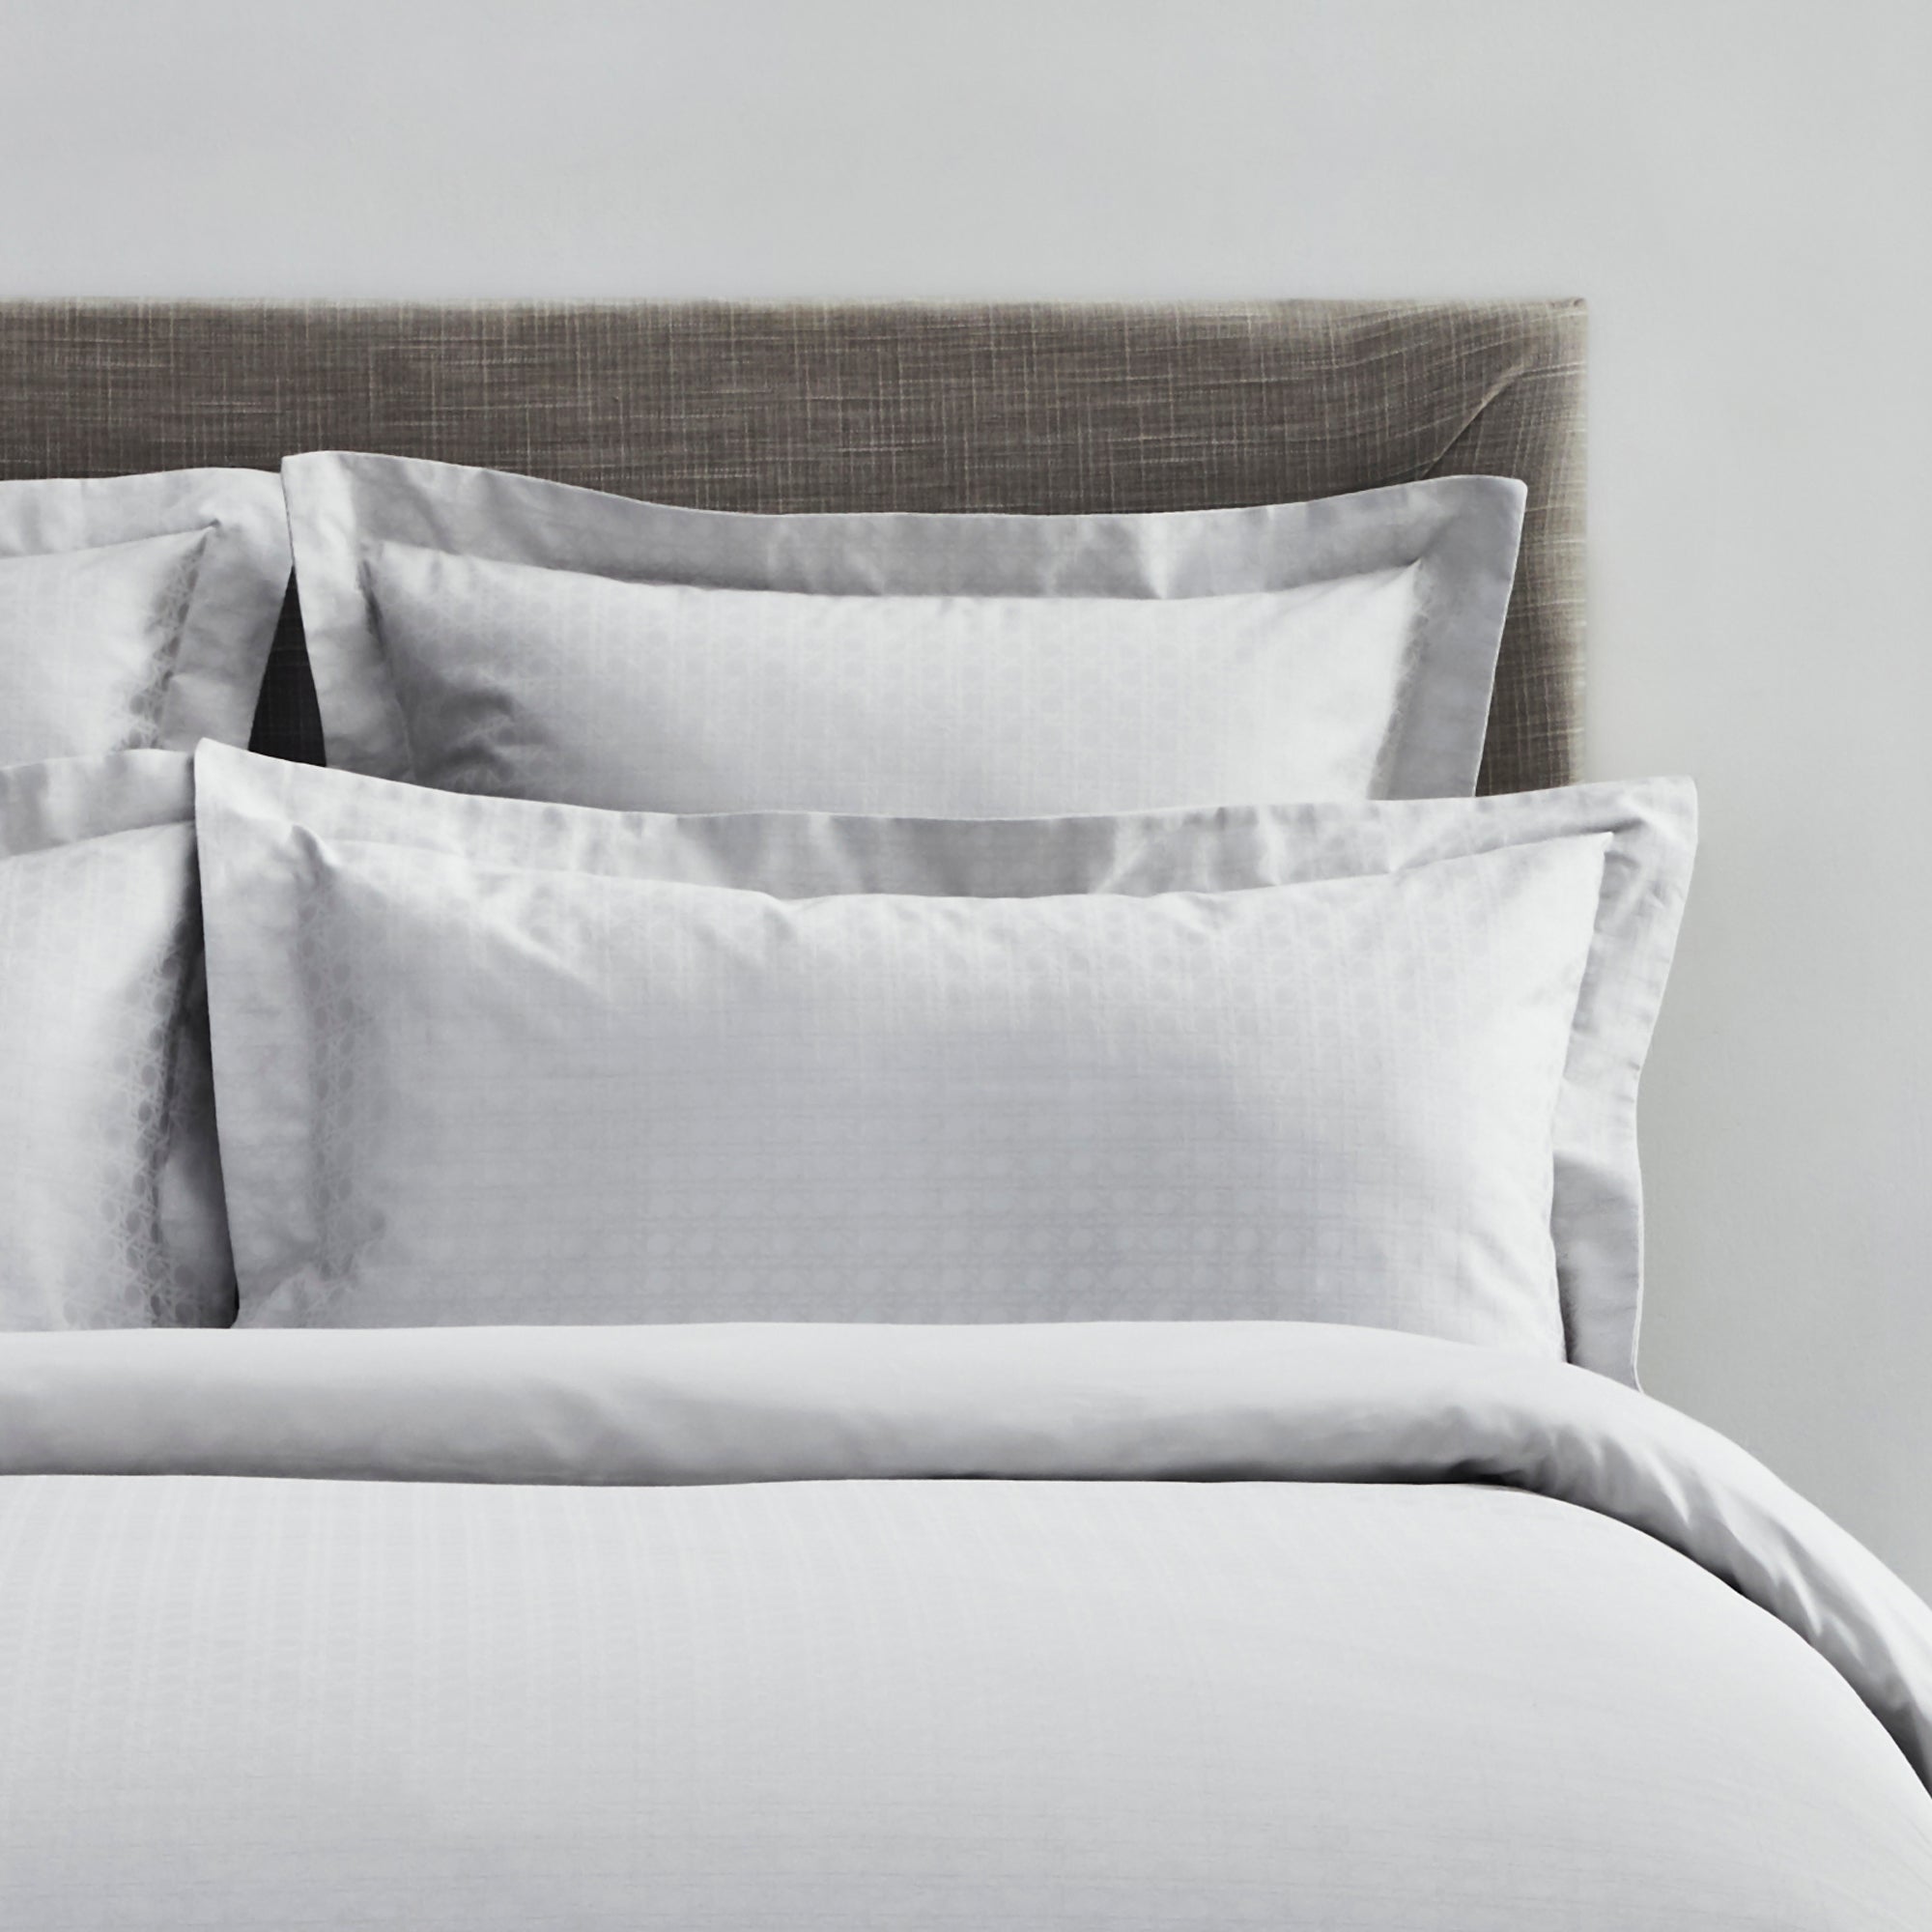 Dorma Purity Marlia Silver Cotton Jacquard Continental Pillowcase Grey